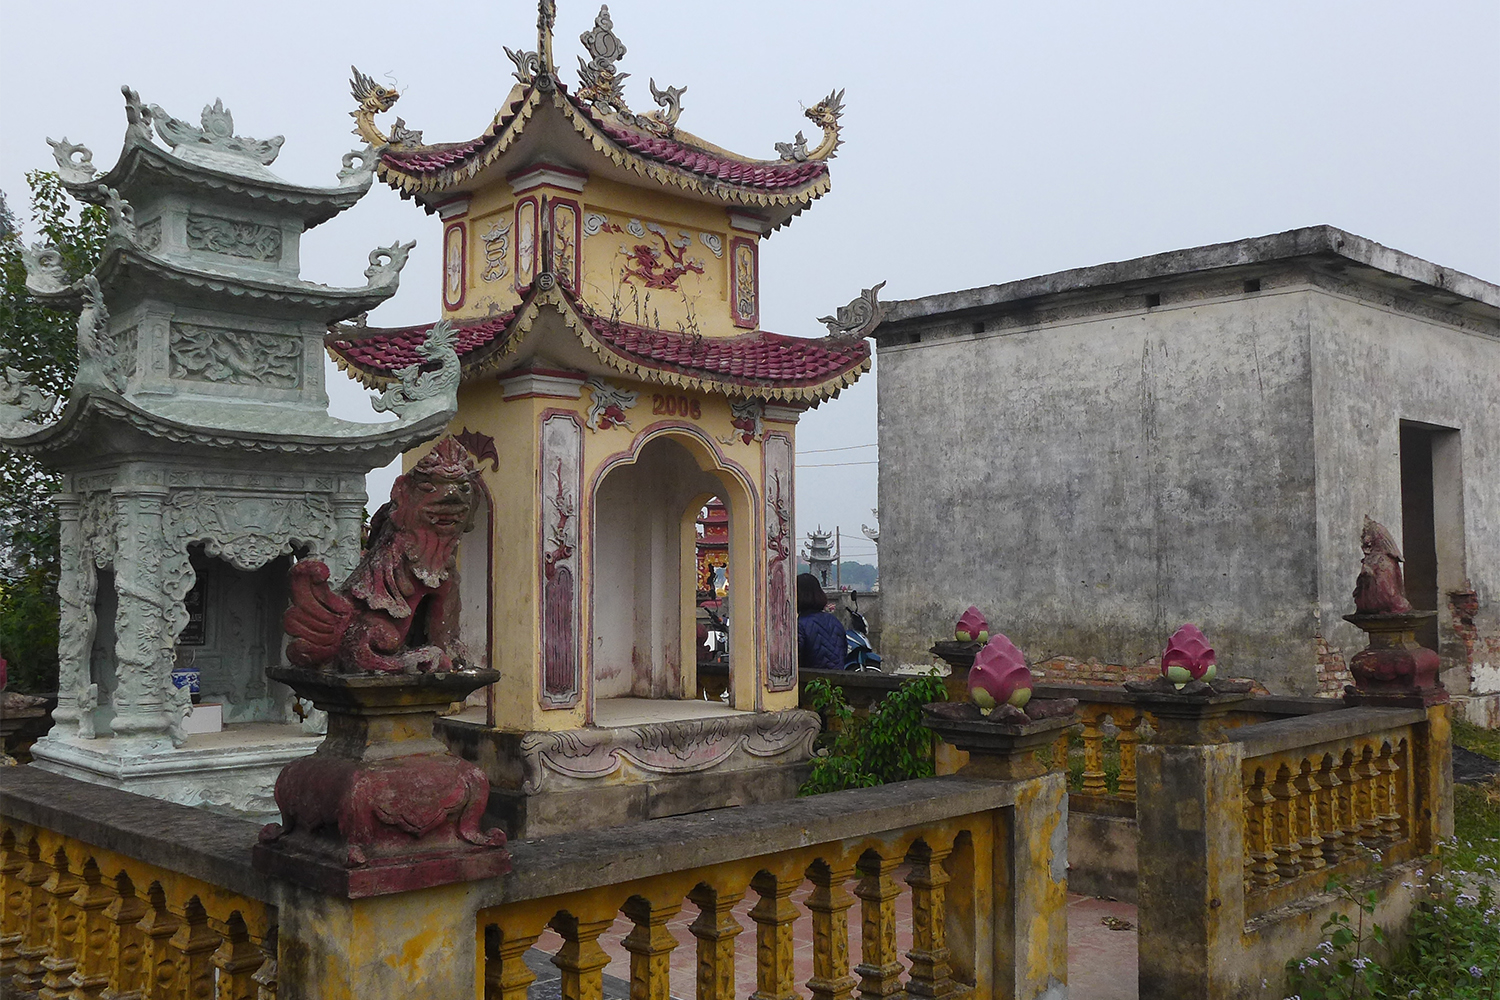 Les tombes sont construites au milieu de la rizière, elles ressemblent à de petites pagodes. Par respect pour les personnes présentes, je n’ai photographié personne en train de prier.